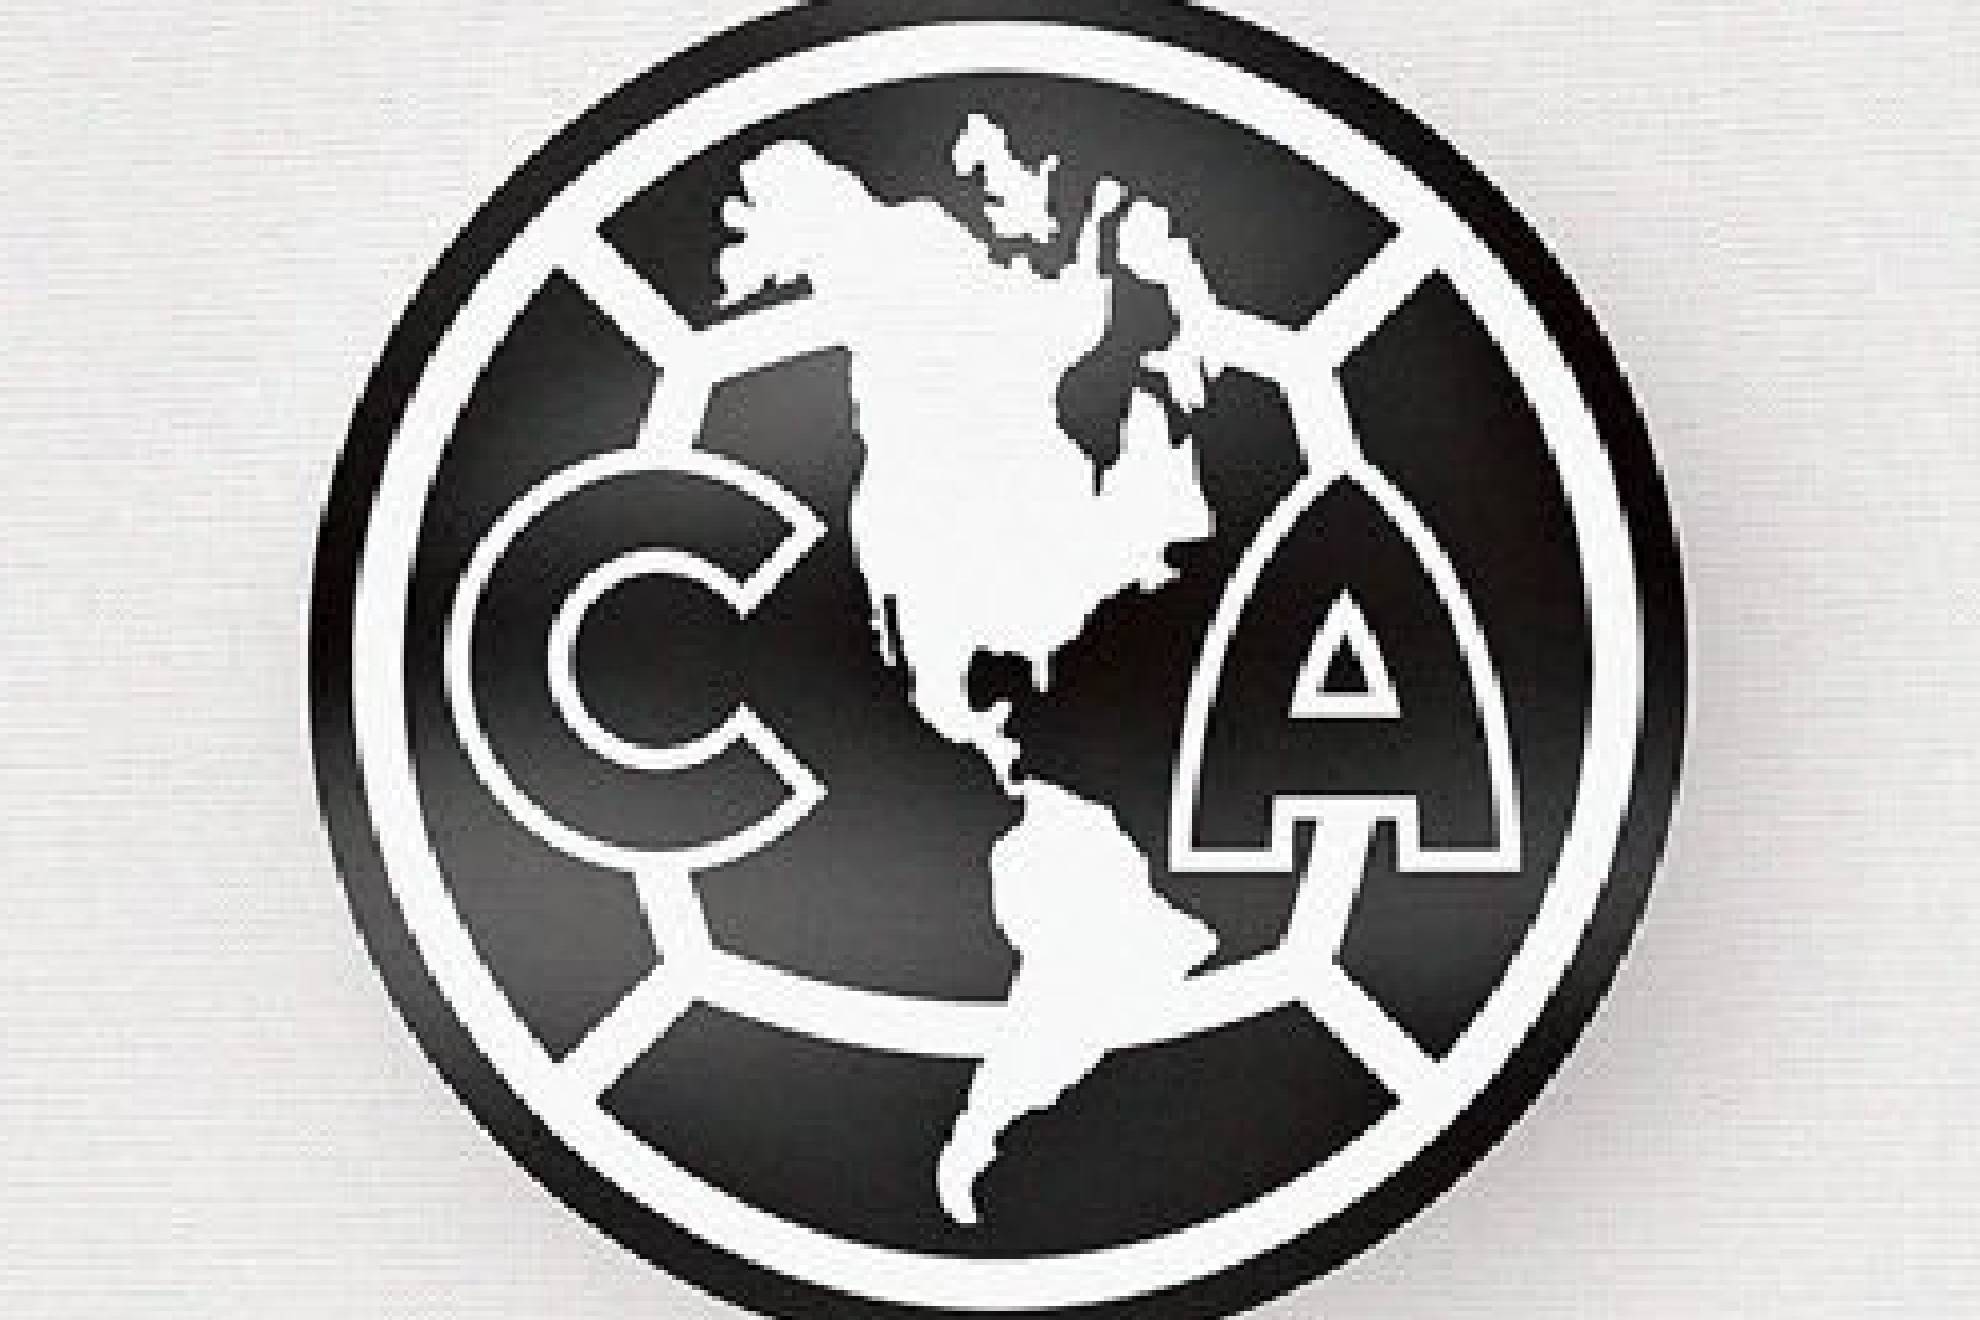 El club América es uno de los equipos más importantes de México y del Continente Americano